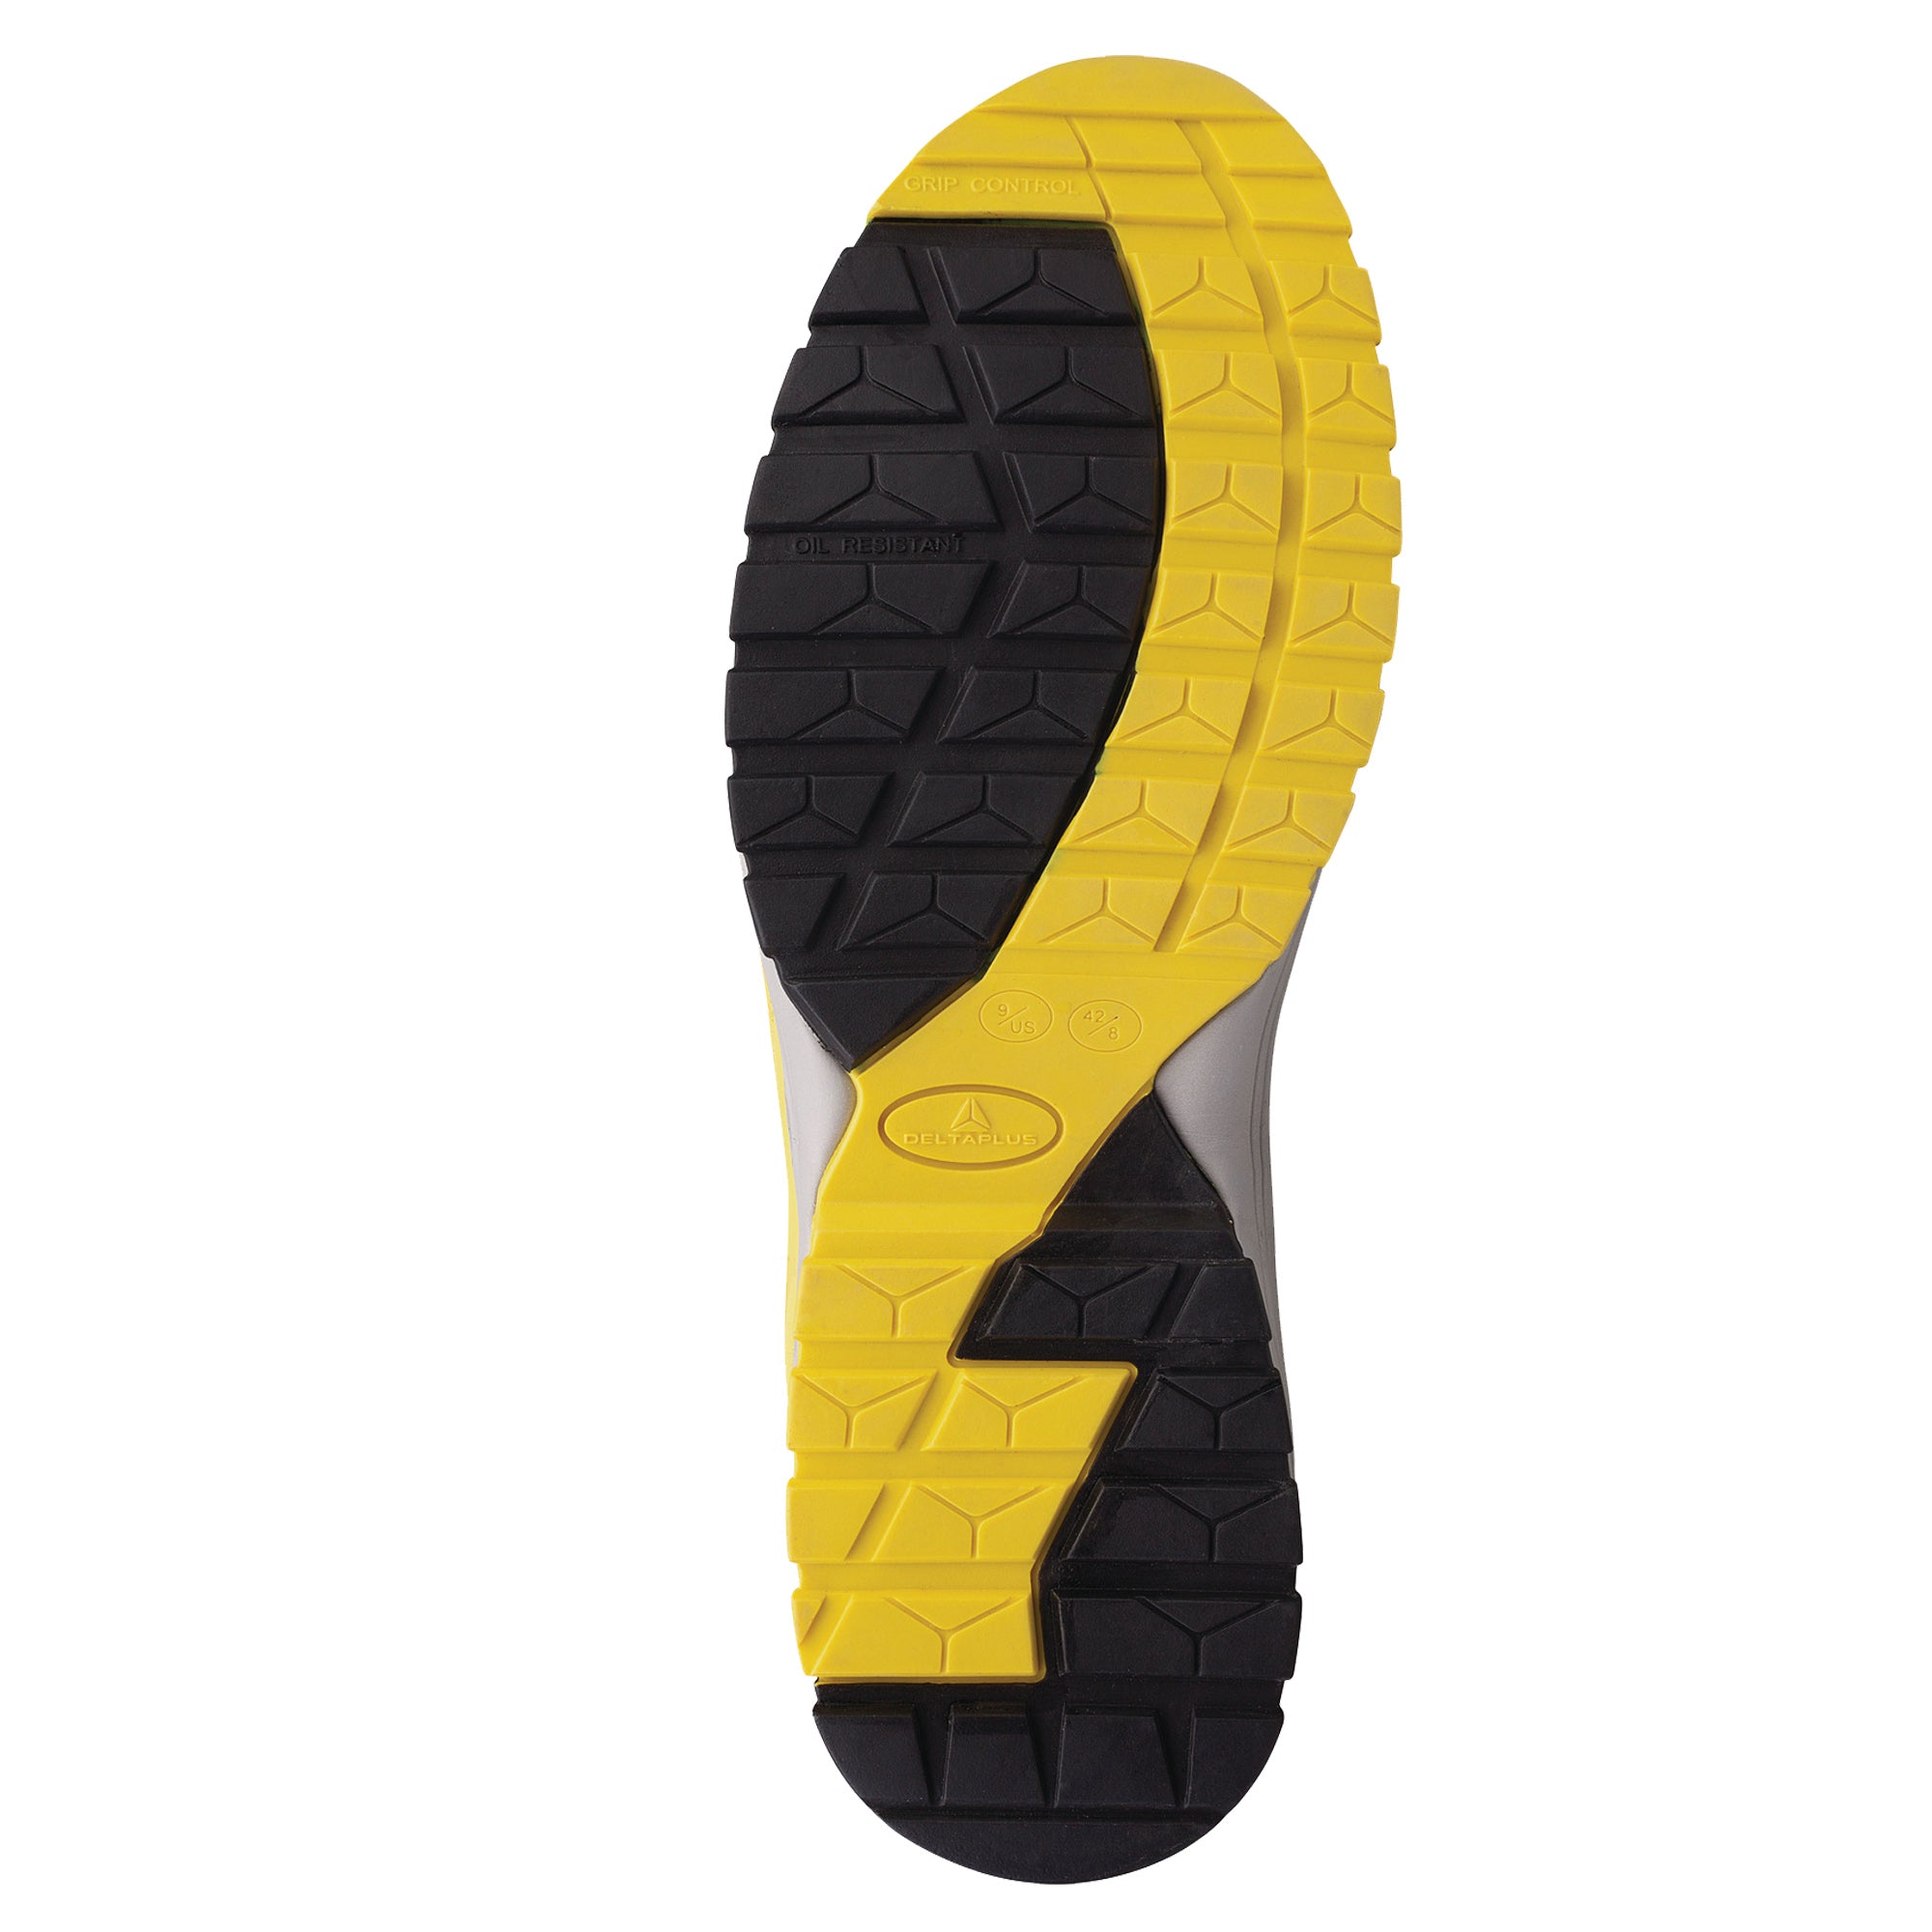 deltaplus-calzatura-sicurezza-memphis-bassa-s1p-esd-hro-src-n-44-nero-giallo